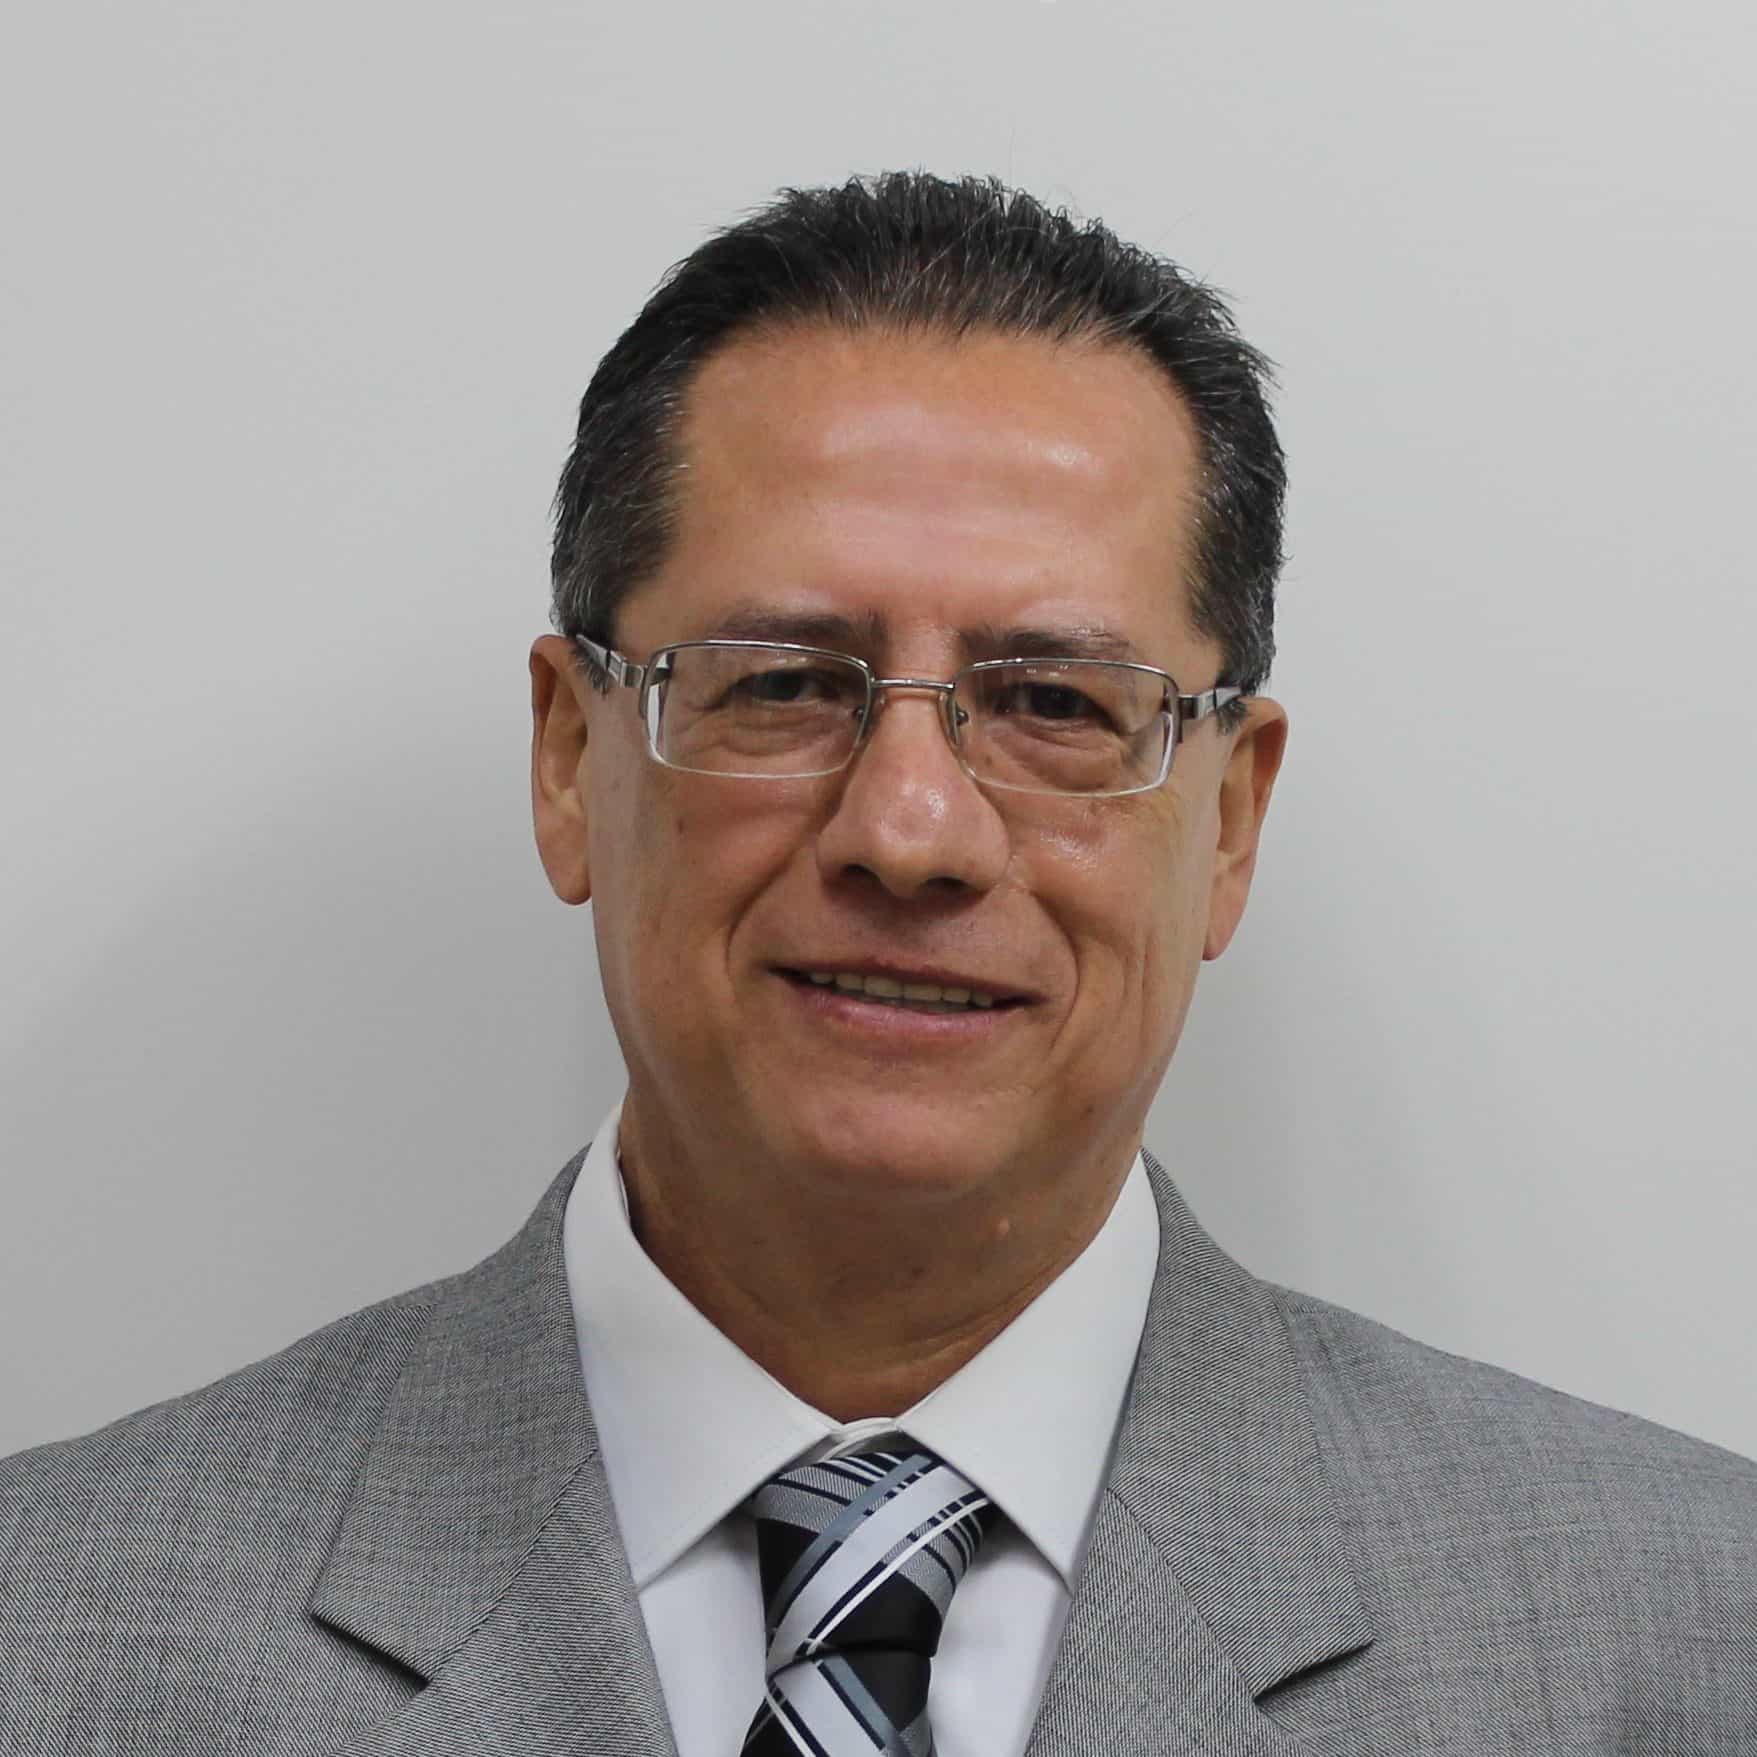 M.I. Luis Arturo Villarreal Morales